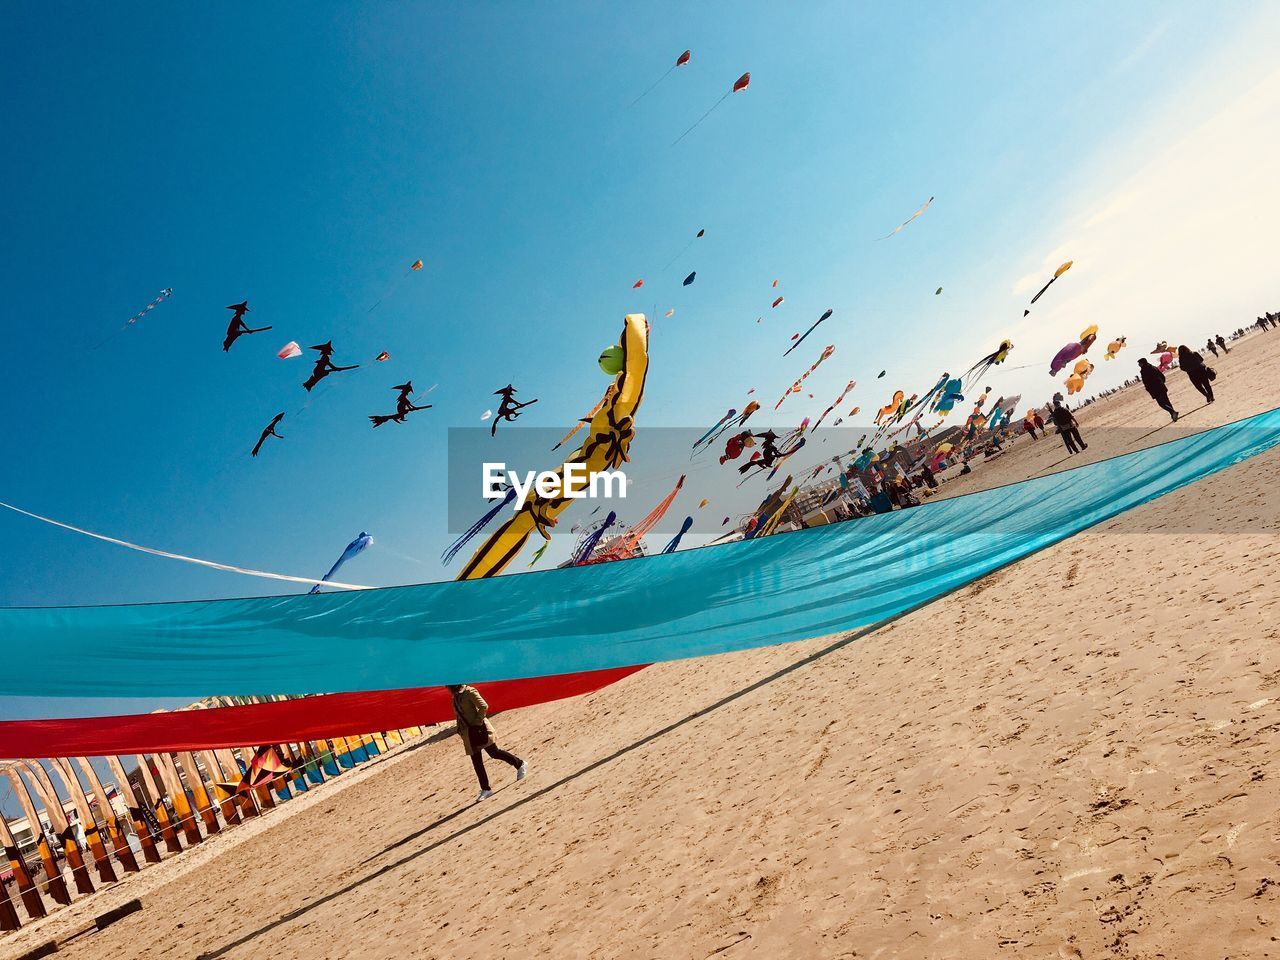 Kites flying over beach against blue sky